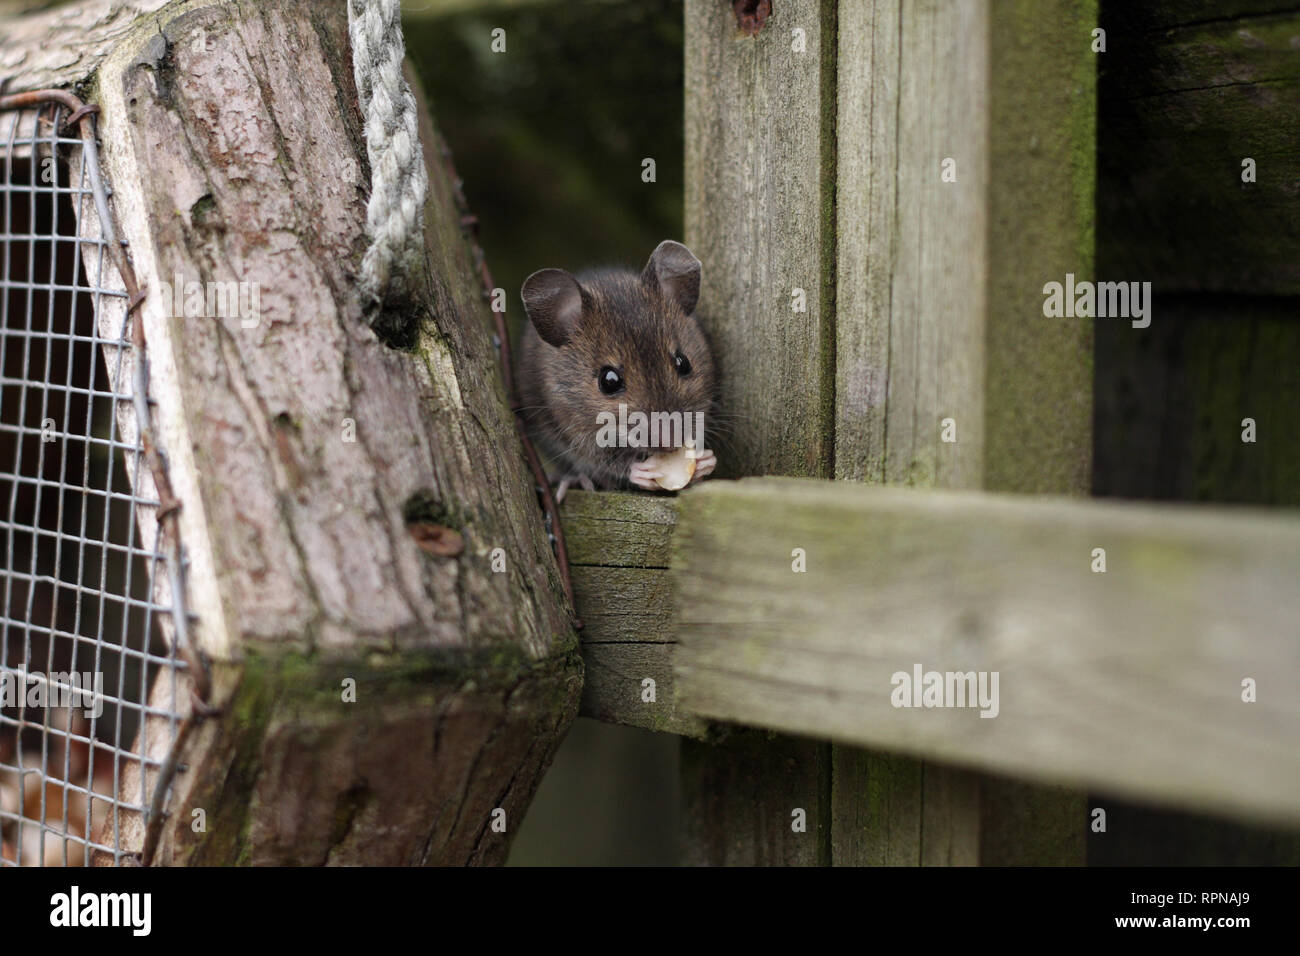 Questo mouse di legno è stato contribuisce di per sé a dadi dal bird feeder. Fotografia scattata nel giardino sul retro in Worcestershire, Regno Unito in Marzo Foto Stock